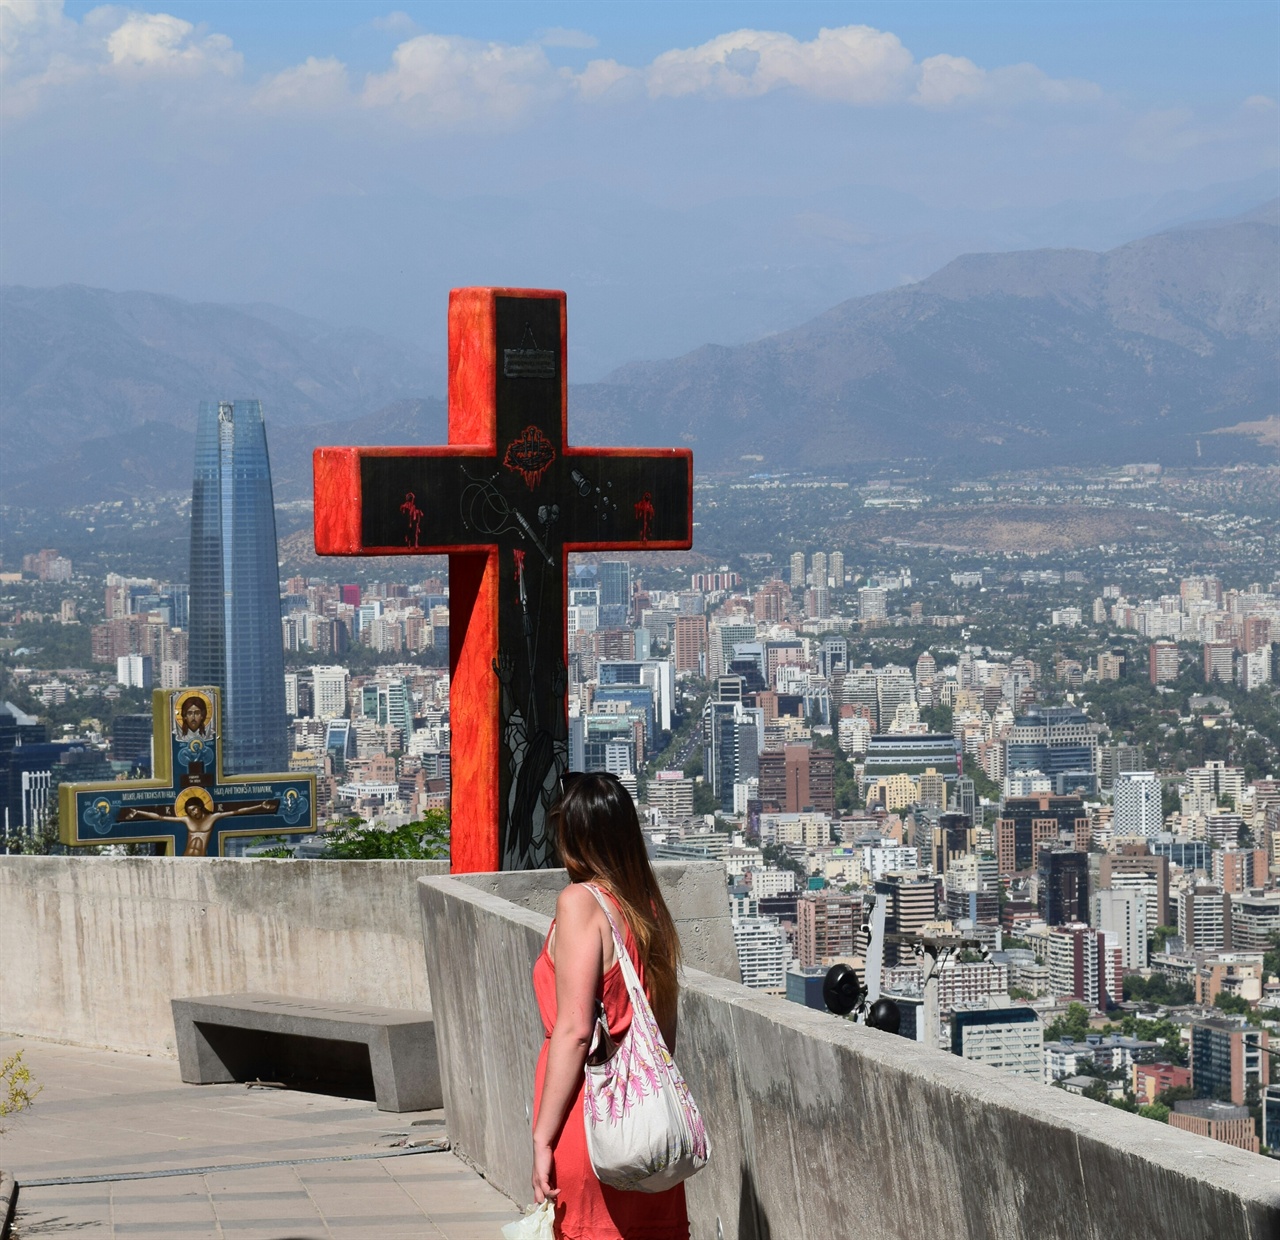 산 크리스토발 언덕은 가톨릭 칠레인의 심앙심이 얼마나 깊은지 잘보여준다.